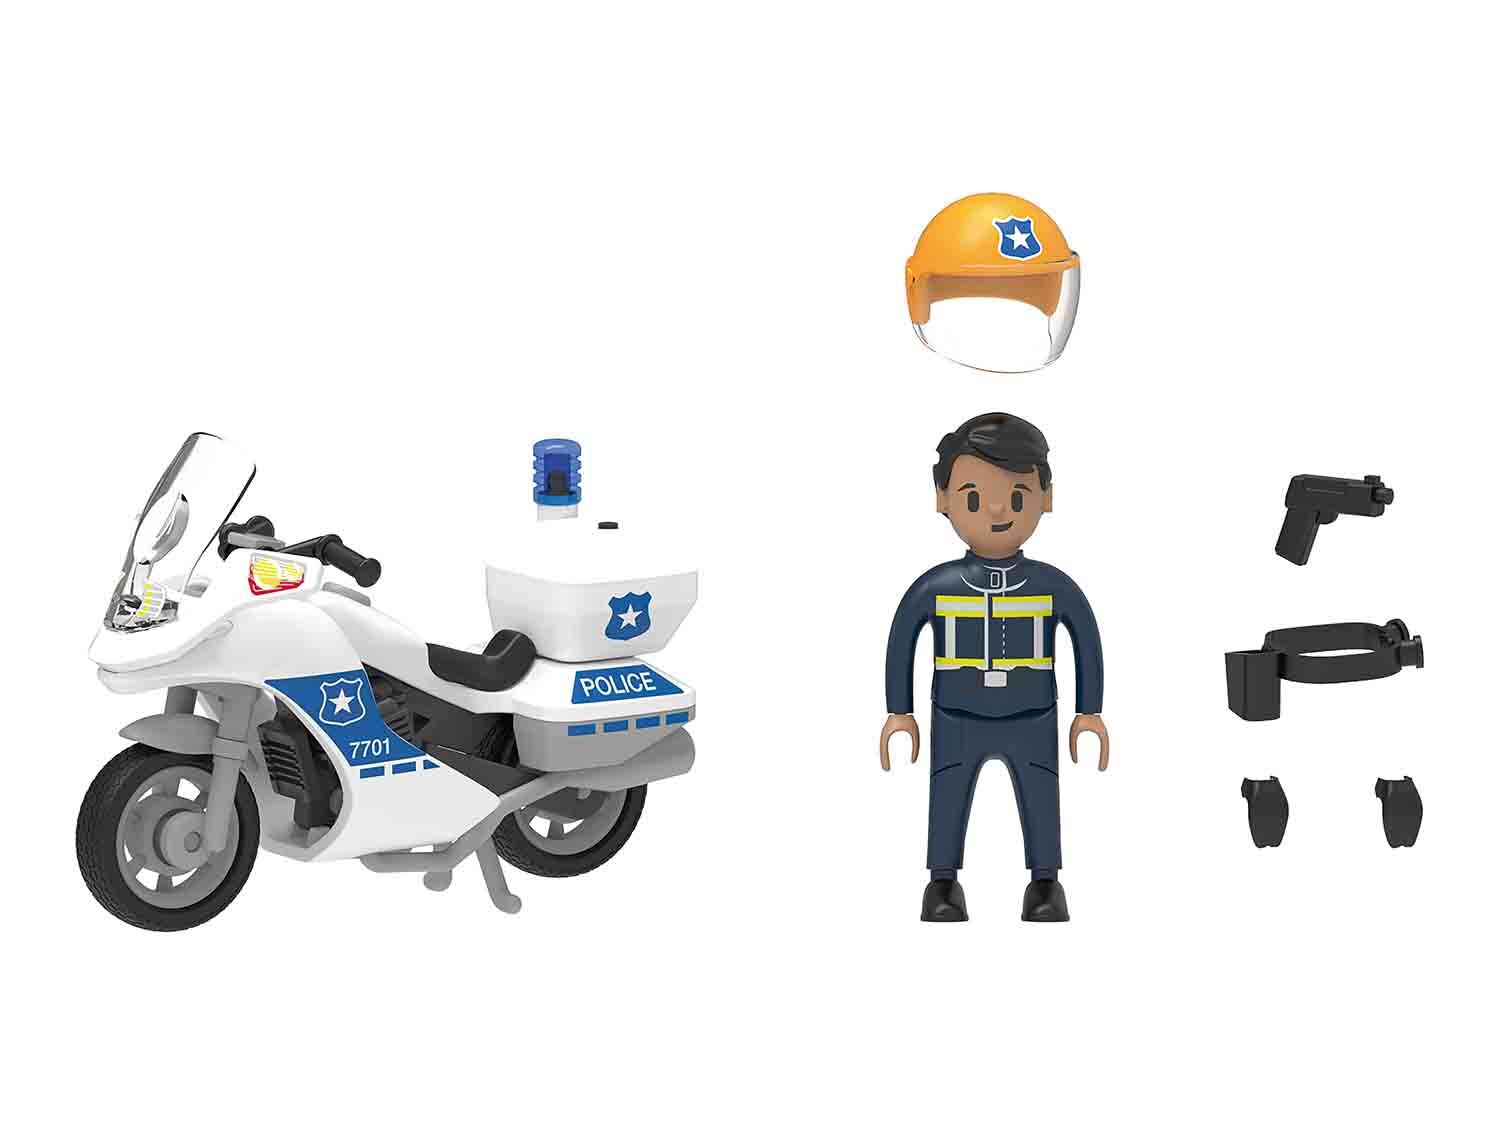 Motocicleta de la policía